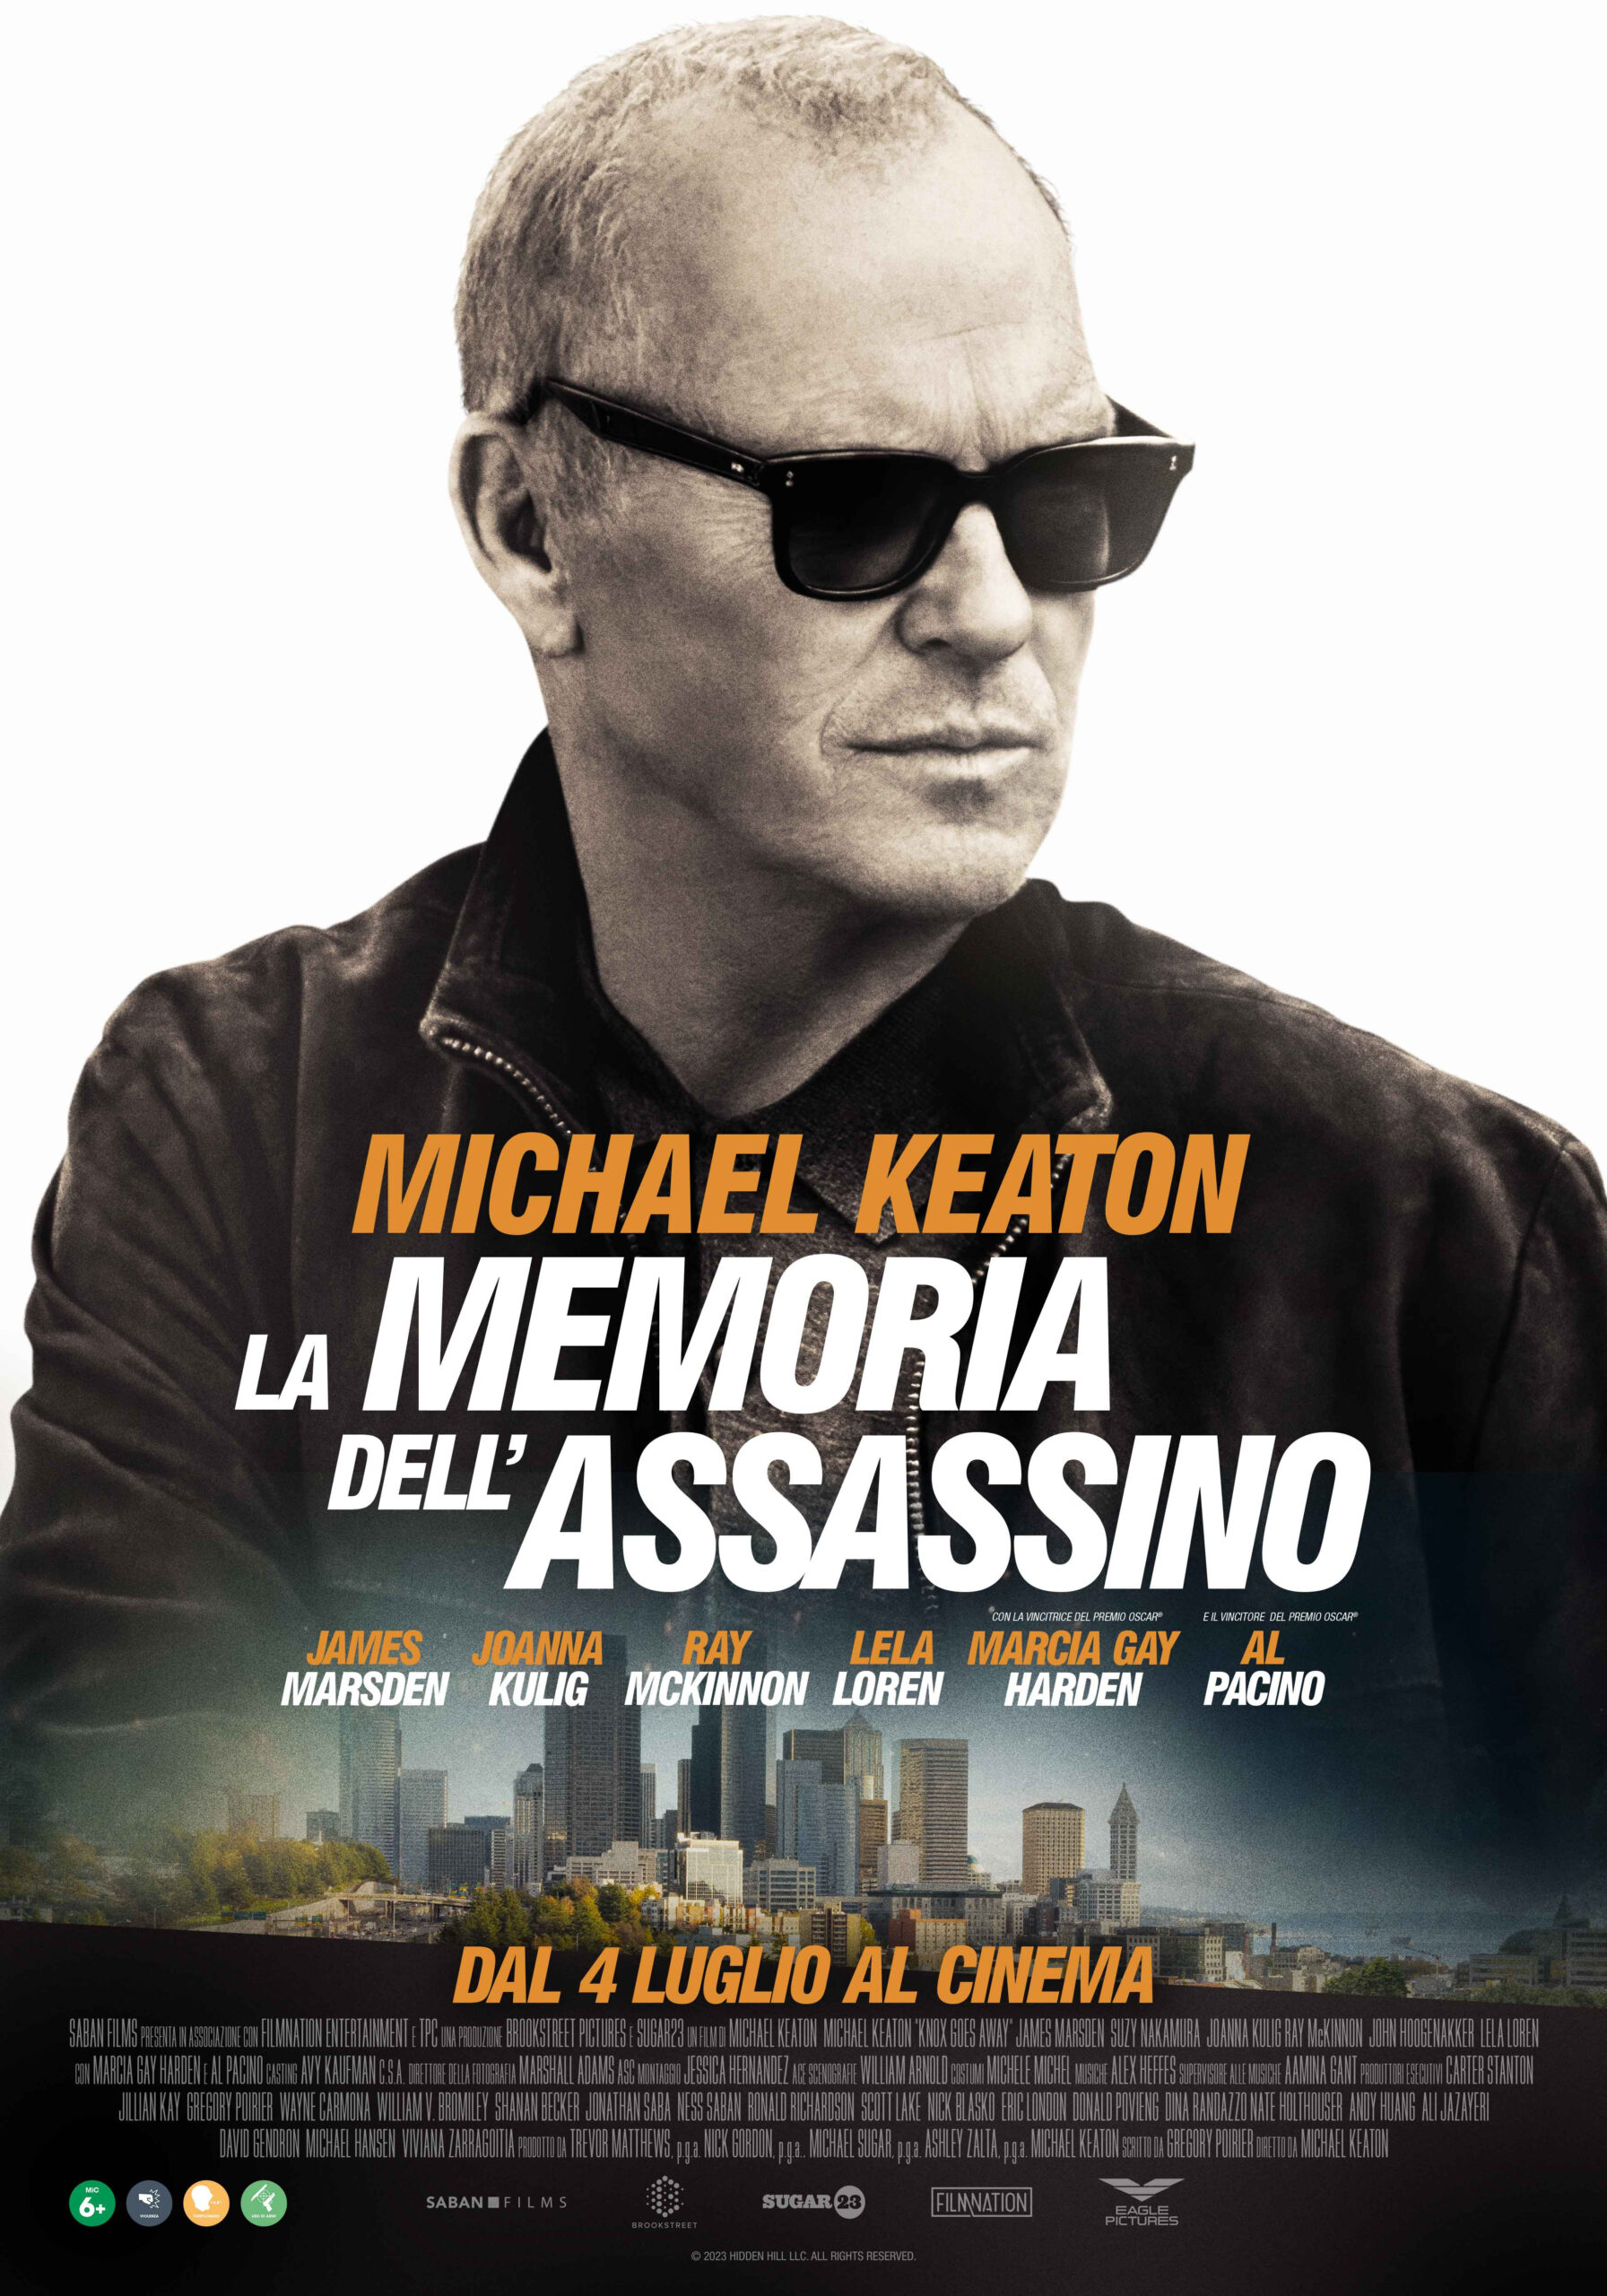 Trailer e poster per LA MEMORIA DELL’ASSASSINO con Michael Keaton e Al Pacino